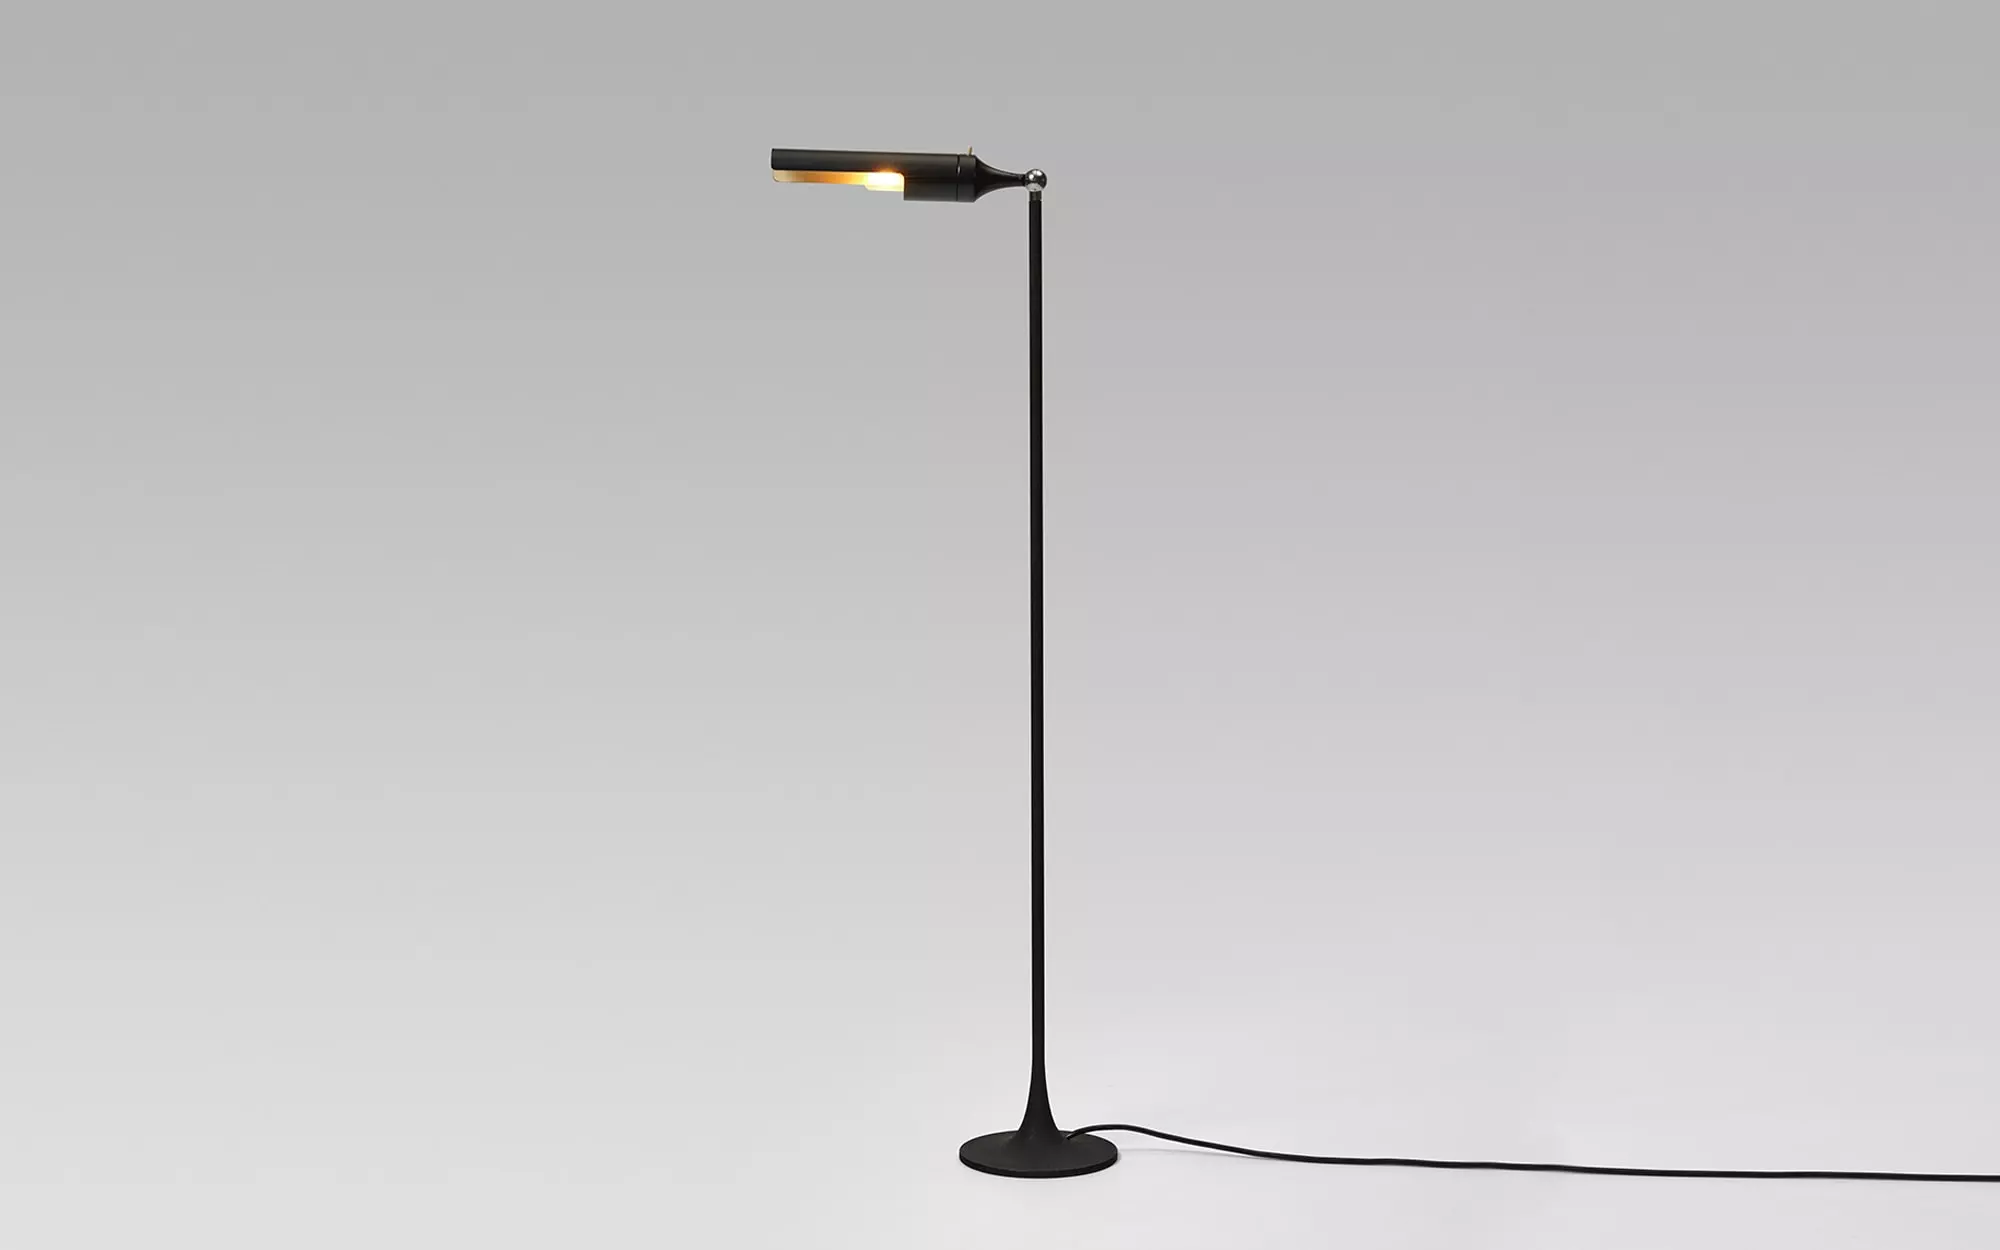 1086 - Gino Sarfatti - Table light - Galerie kreo